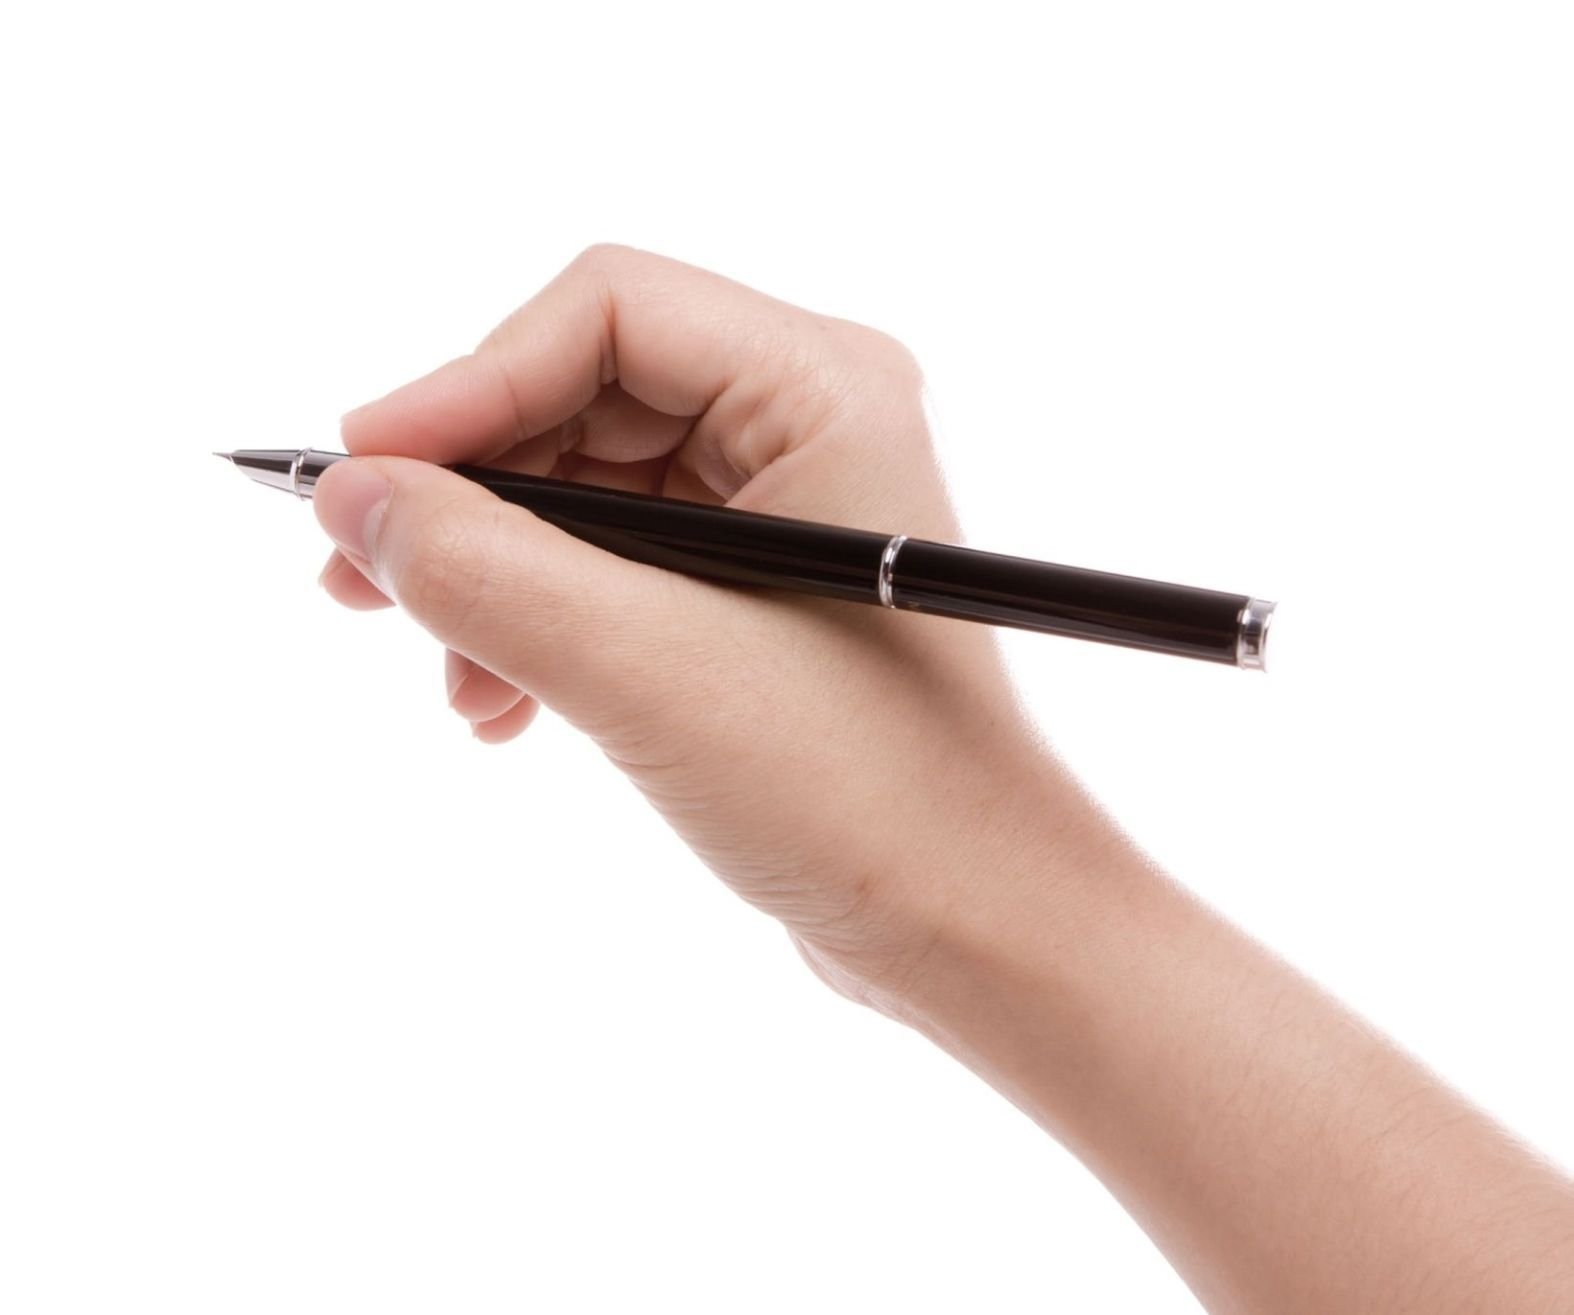 Take a pen. Рука с ручкой. Рука с авторучкой. Женская рука с ручкой. Рука держит ручку.